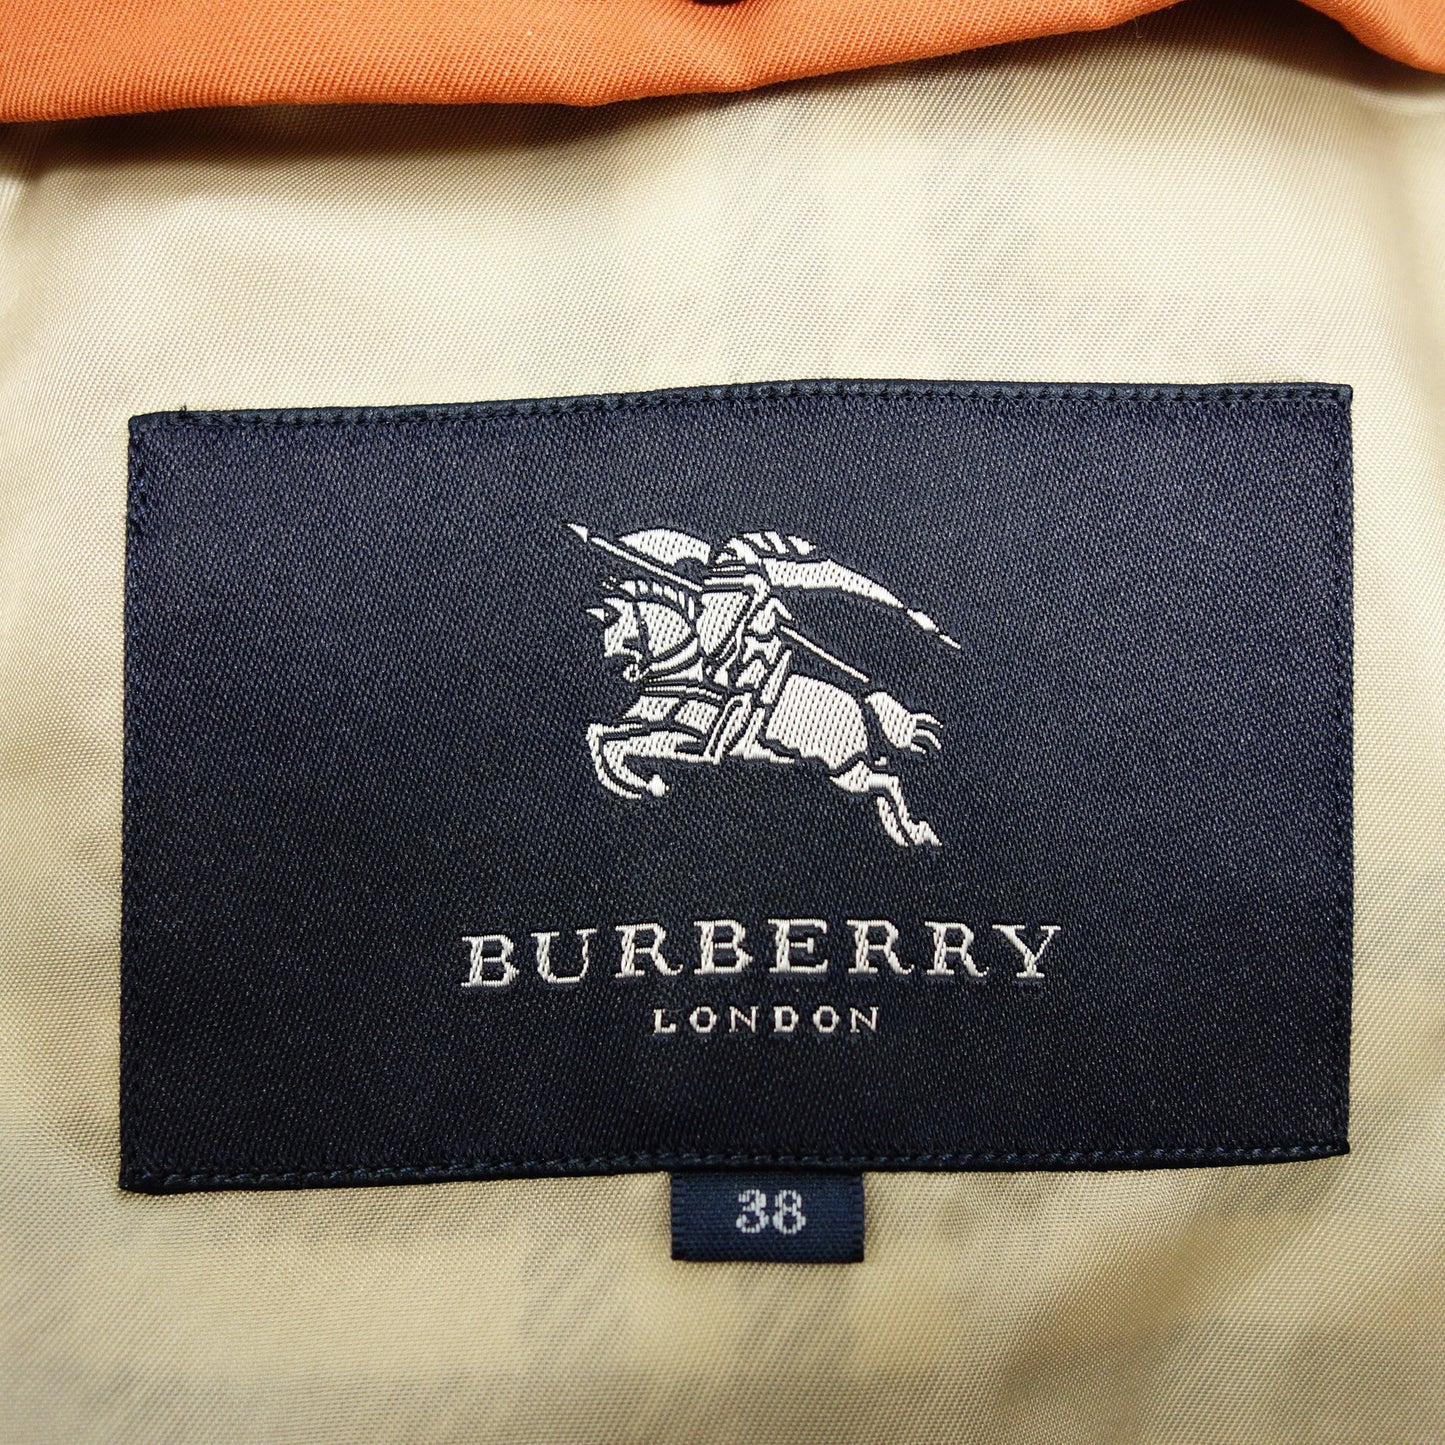 状况良好 ◆ Burberry London 风衣 橙色 带衬里 38 女士 BURBERRY LONDON [AFA3] 